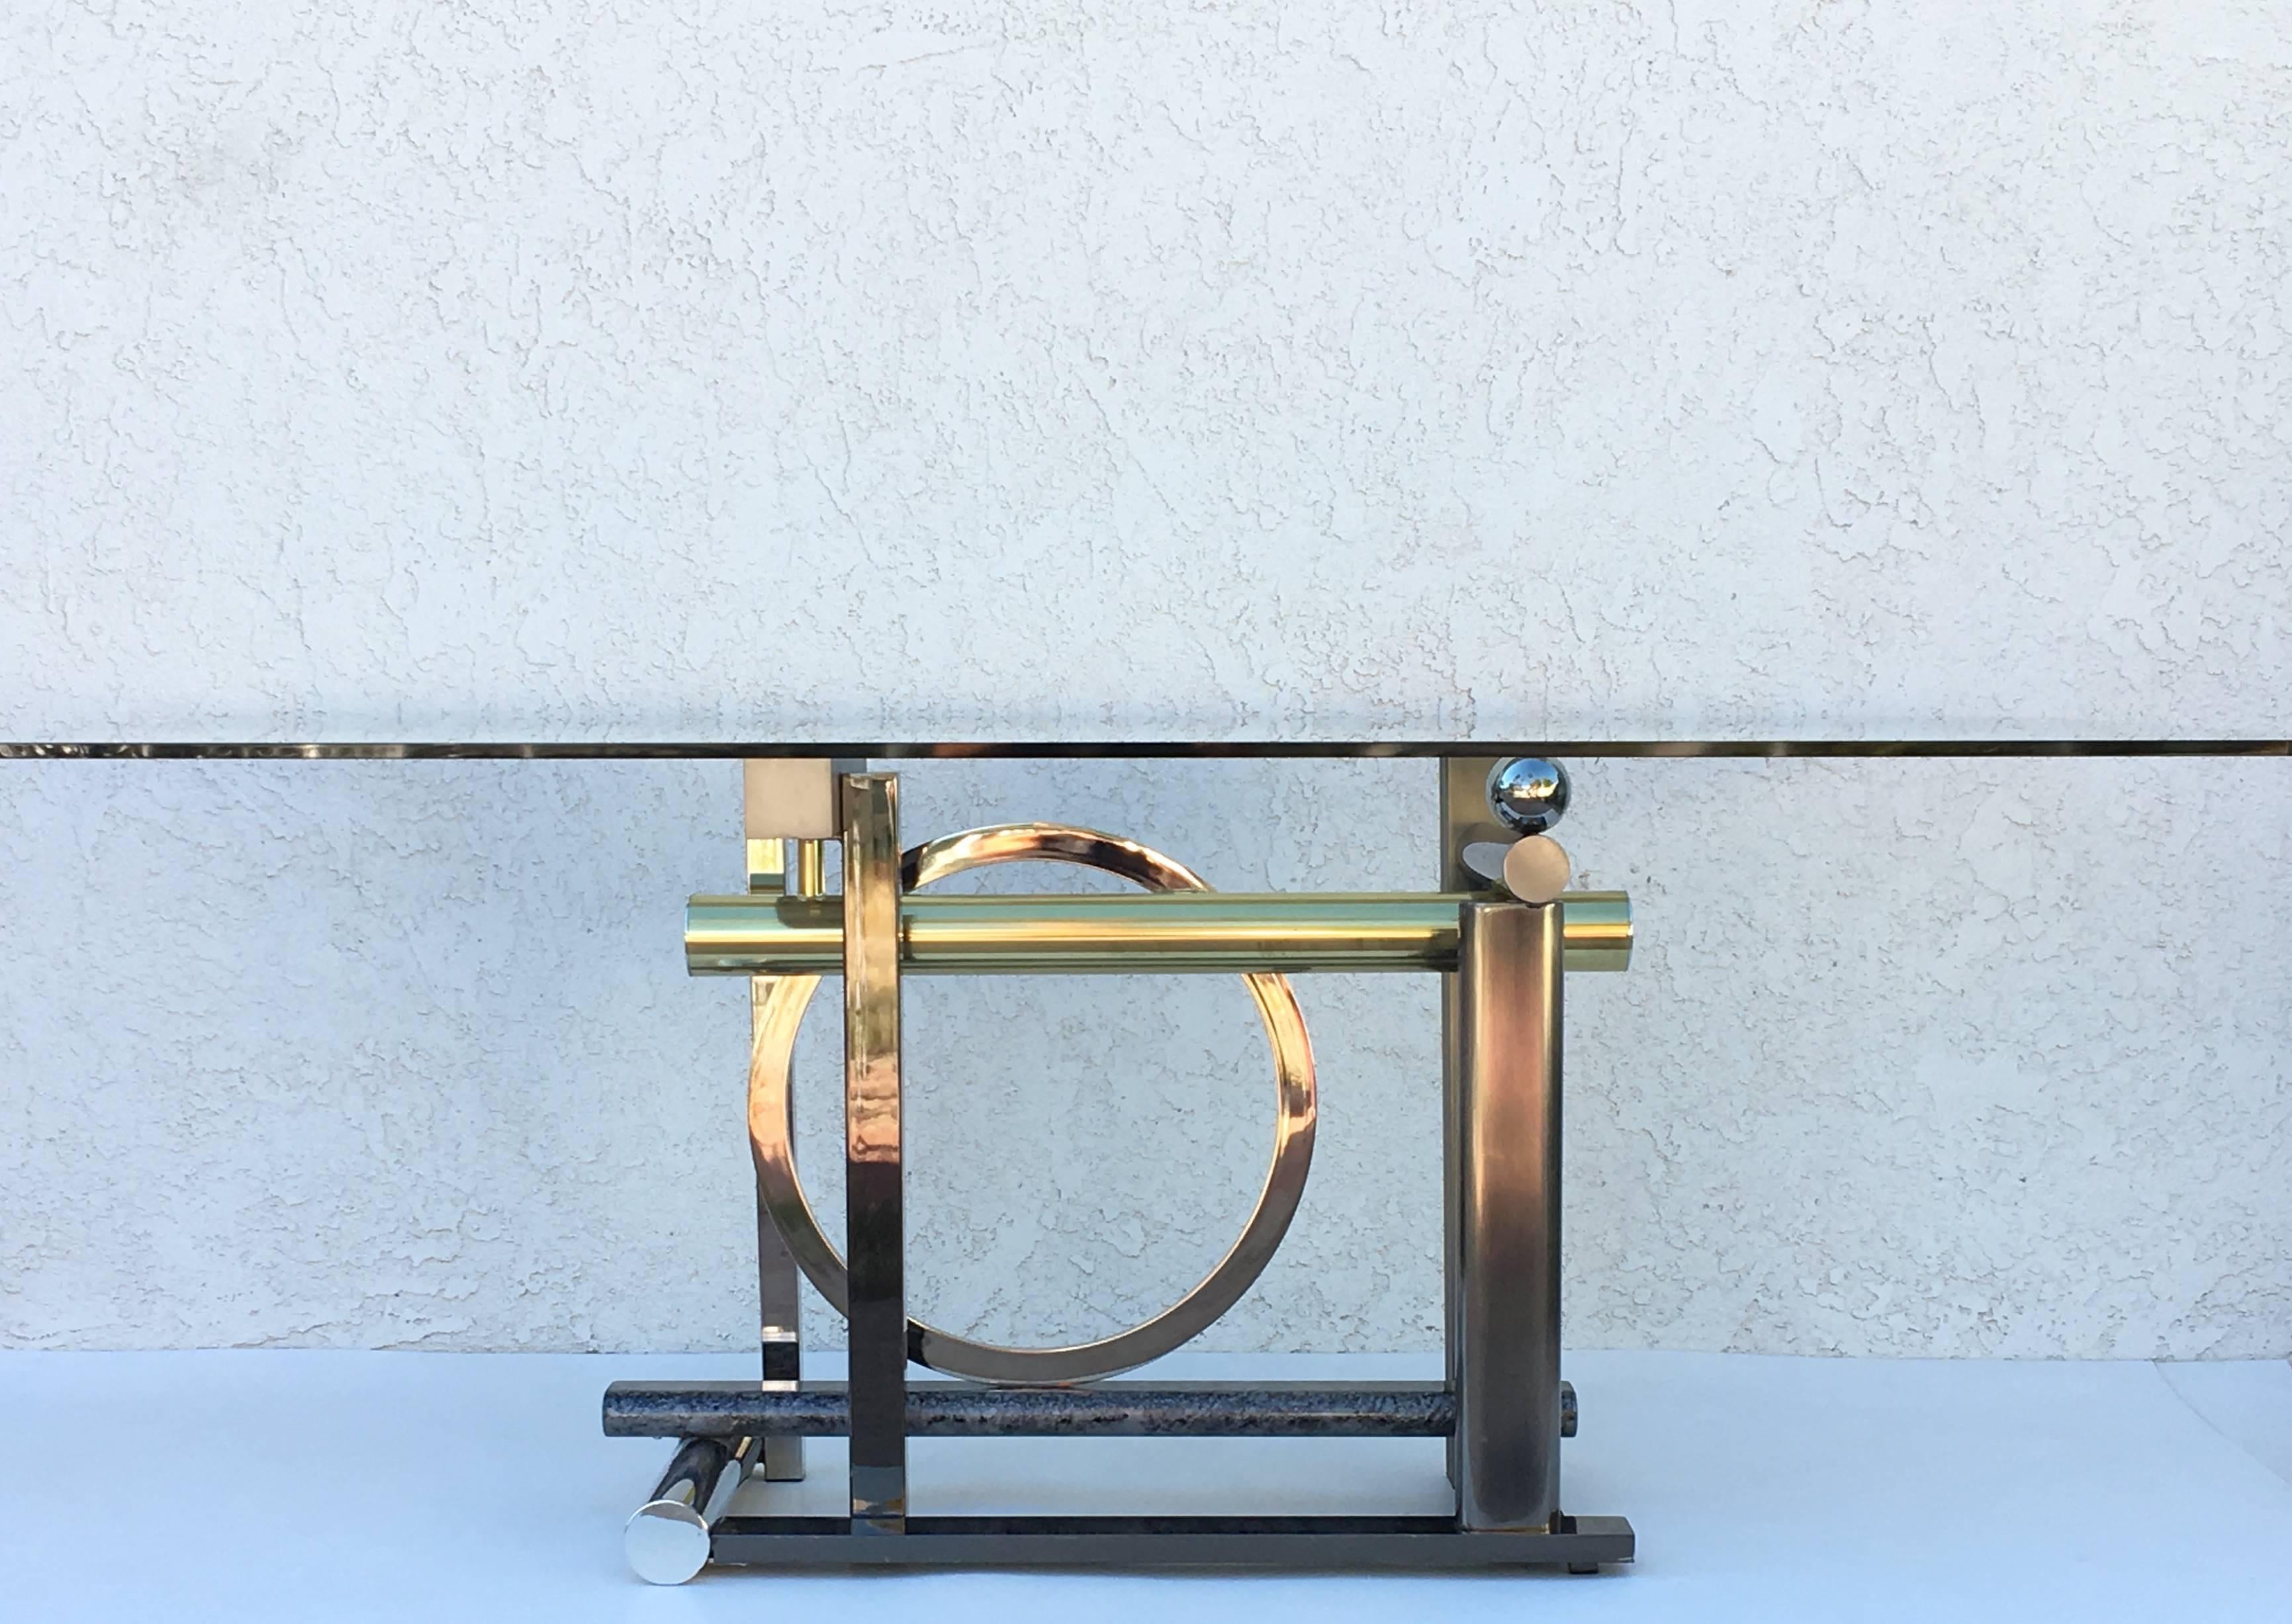 Une table à manger ou un bureau sculptural postmoderne conçu par Rick Lee pour le Design Institute of America en 1993.

La base est faite de métaux mixtes (laiton, chrome, acier inoxydable brossé, bronze et bien d'autres finitions).
Mesures : Le